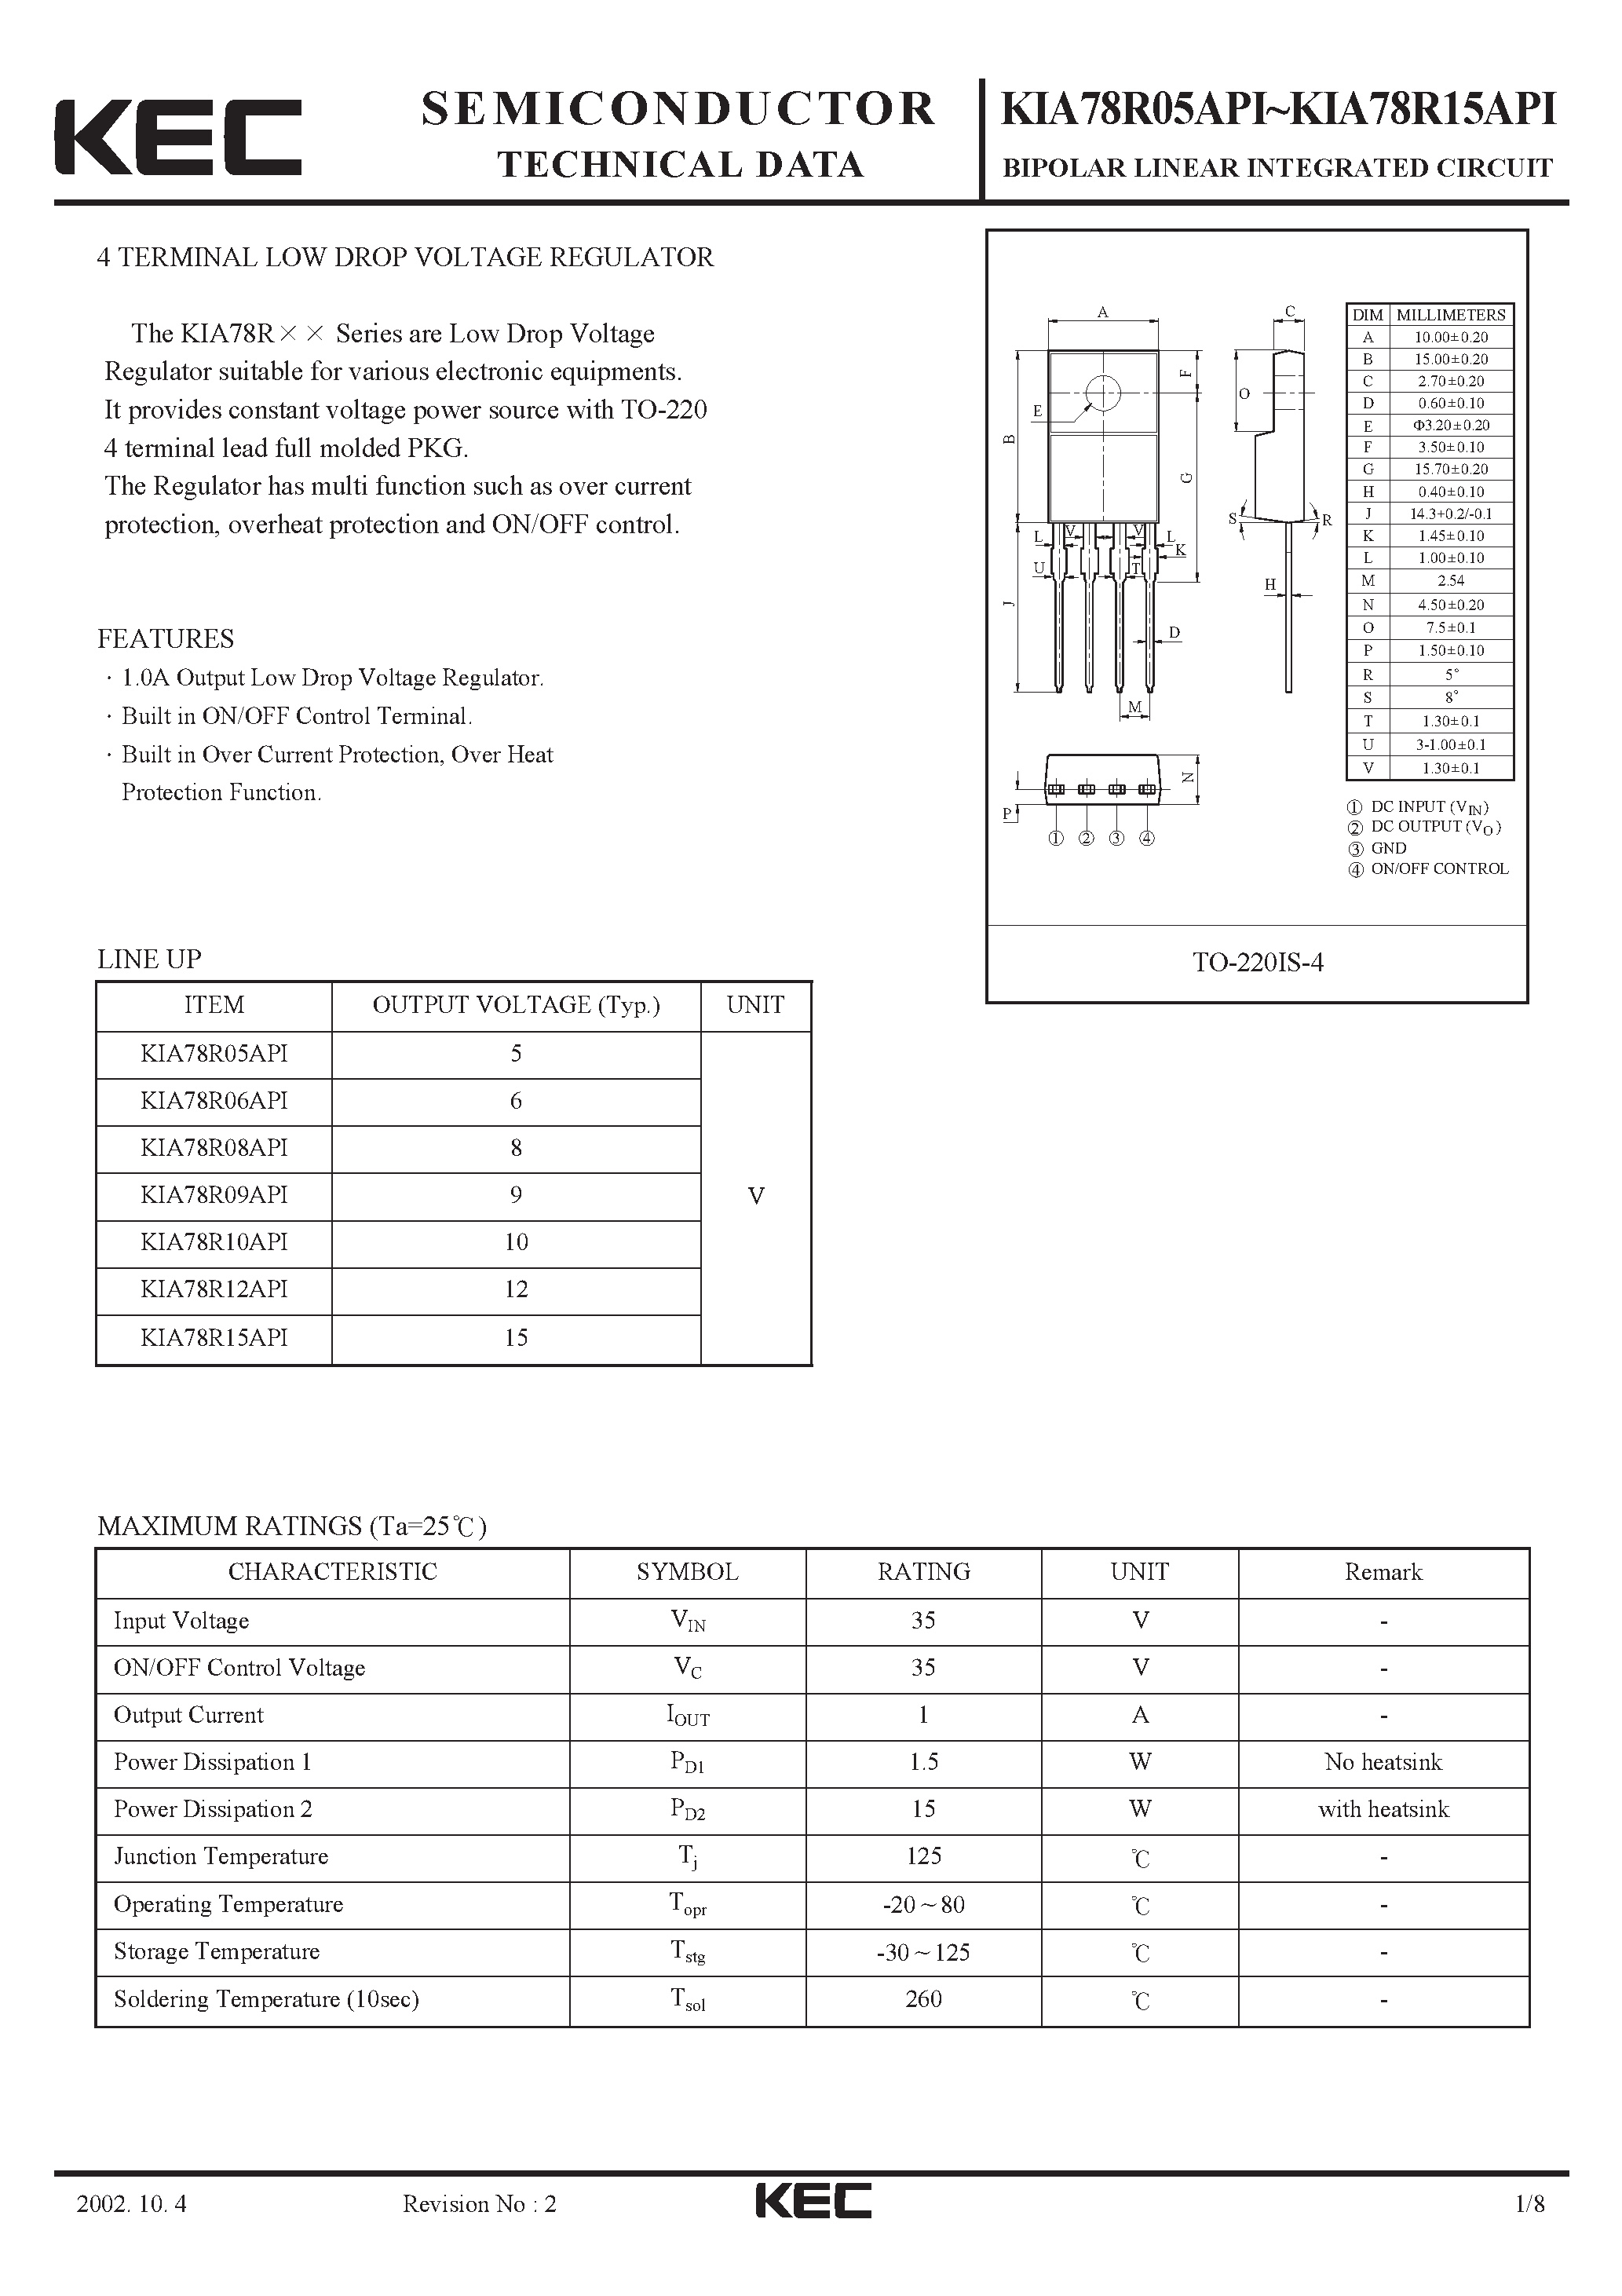 Datasheet KIA78R09API - BIPOLAR LINEAR INTEGRATED CIRCUIT (4 TERMINAL LOW DROP VOLTAGE REGULATOR) page 1